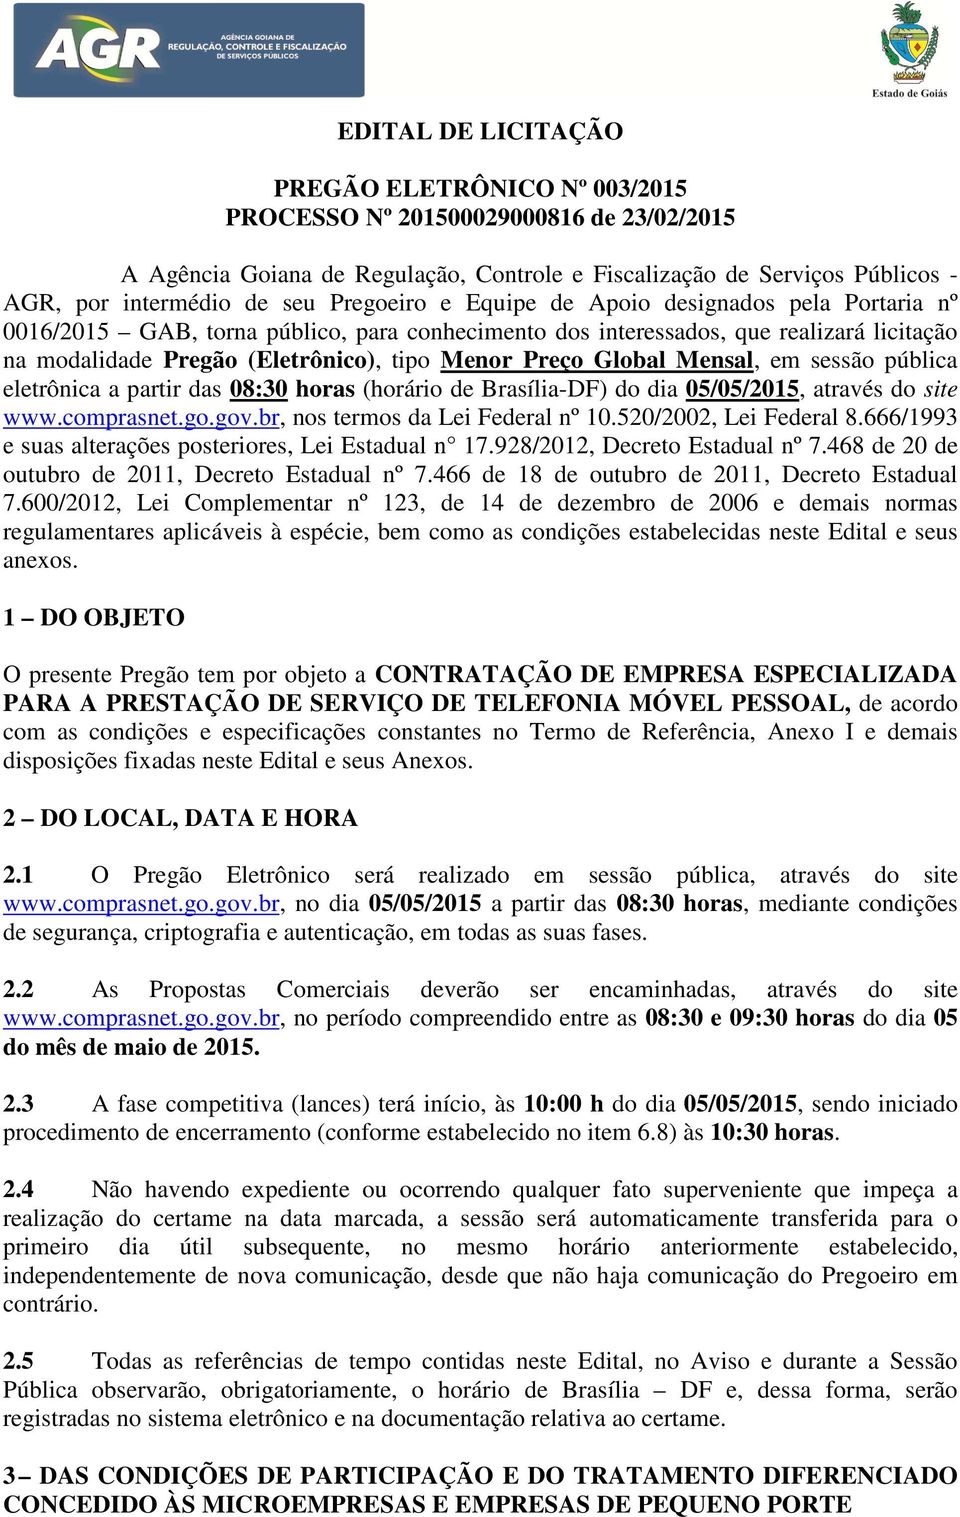 Global Mensal, em sessão pública eletrônica a partir das 08:30 horas (horário de Brasília-DF) do dia 05/05/2015, através do site www.comprasnet.go.gov.br, nos termos da Lei Federal nº 10.